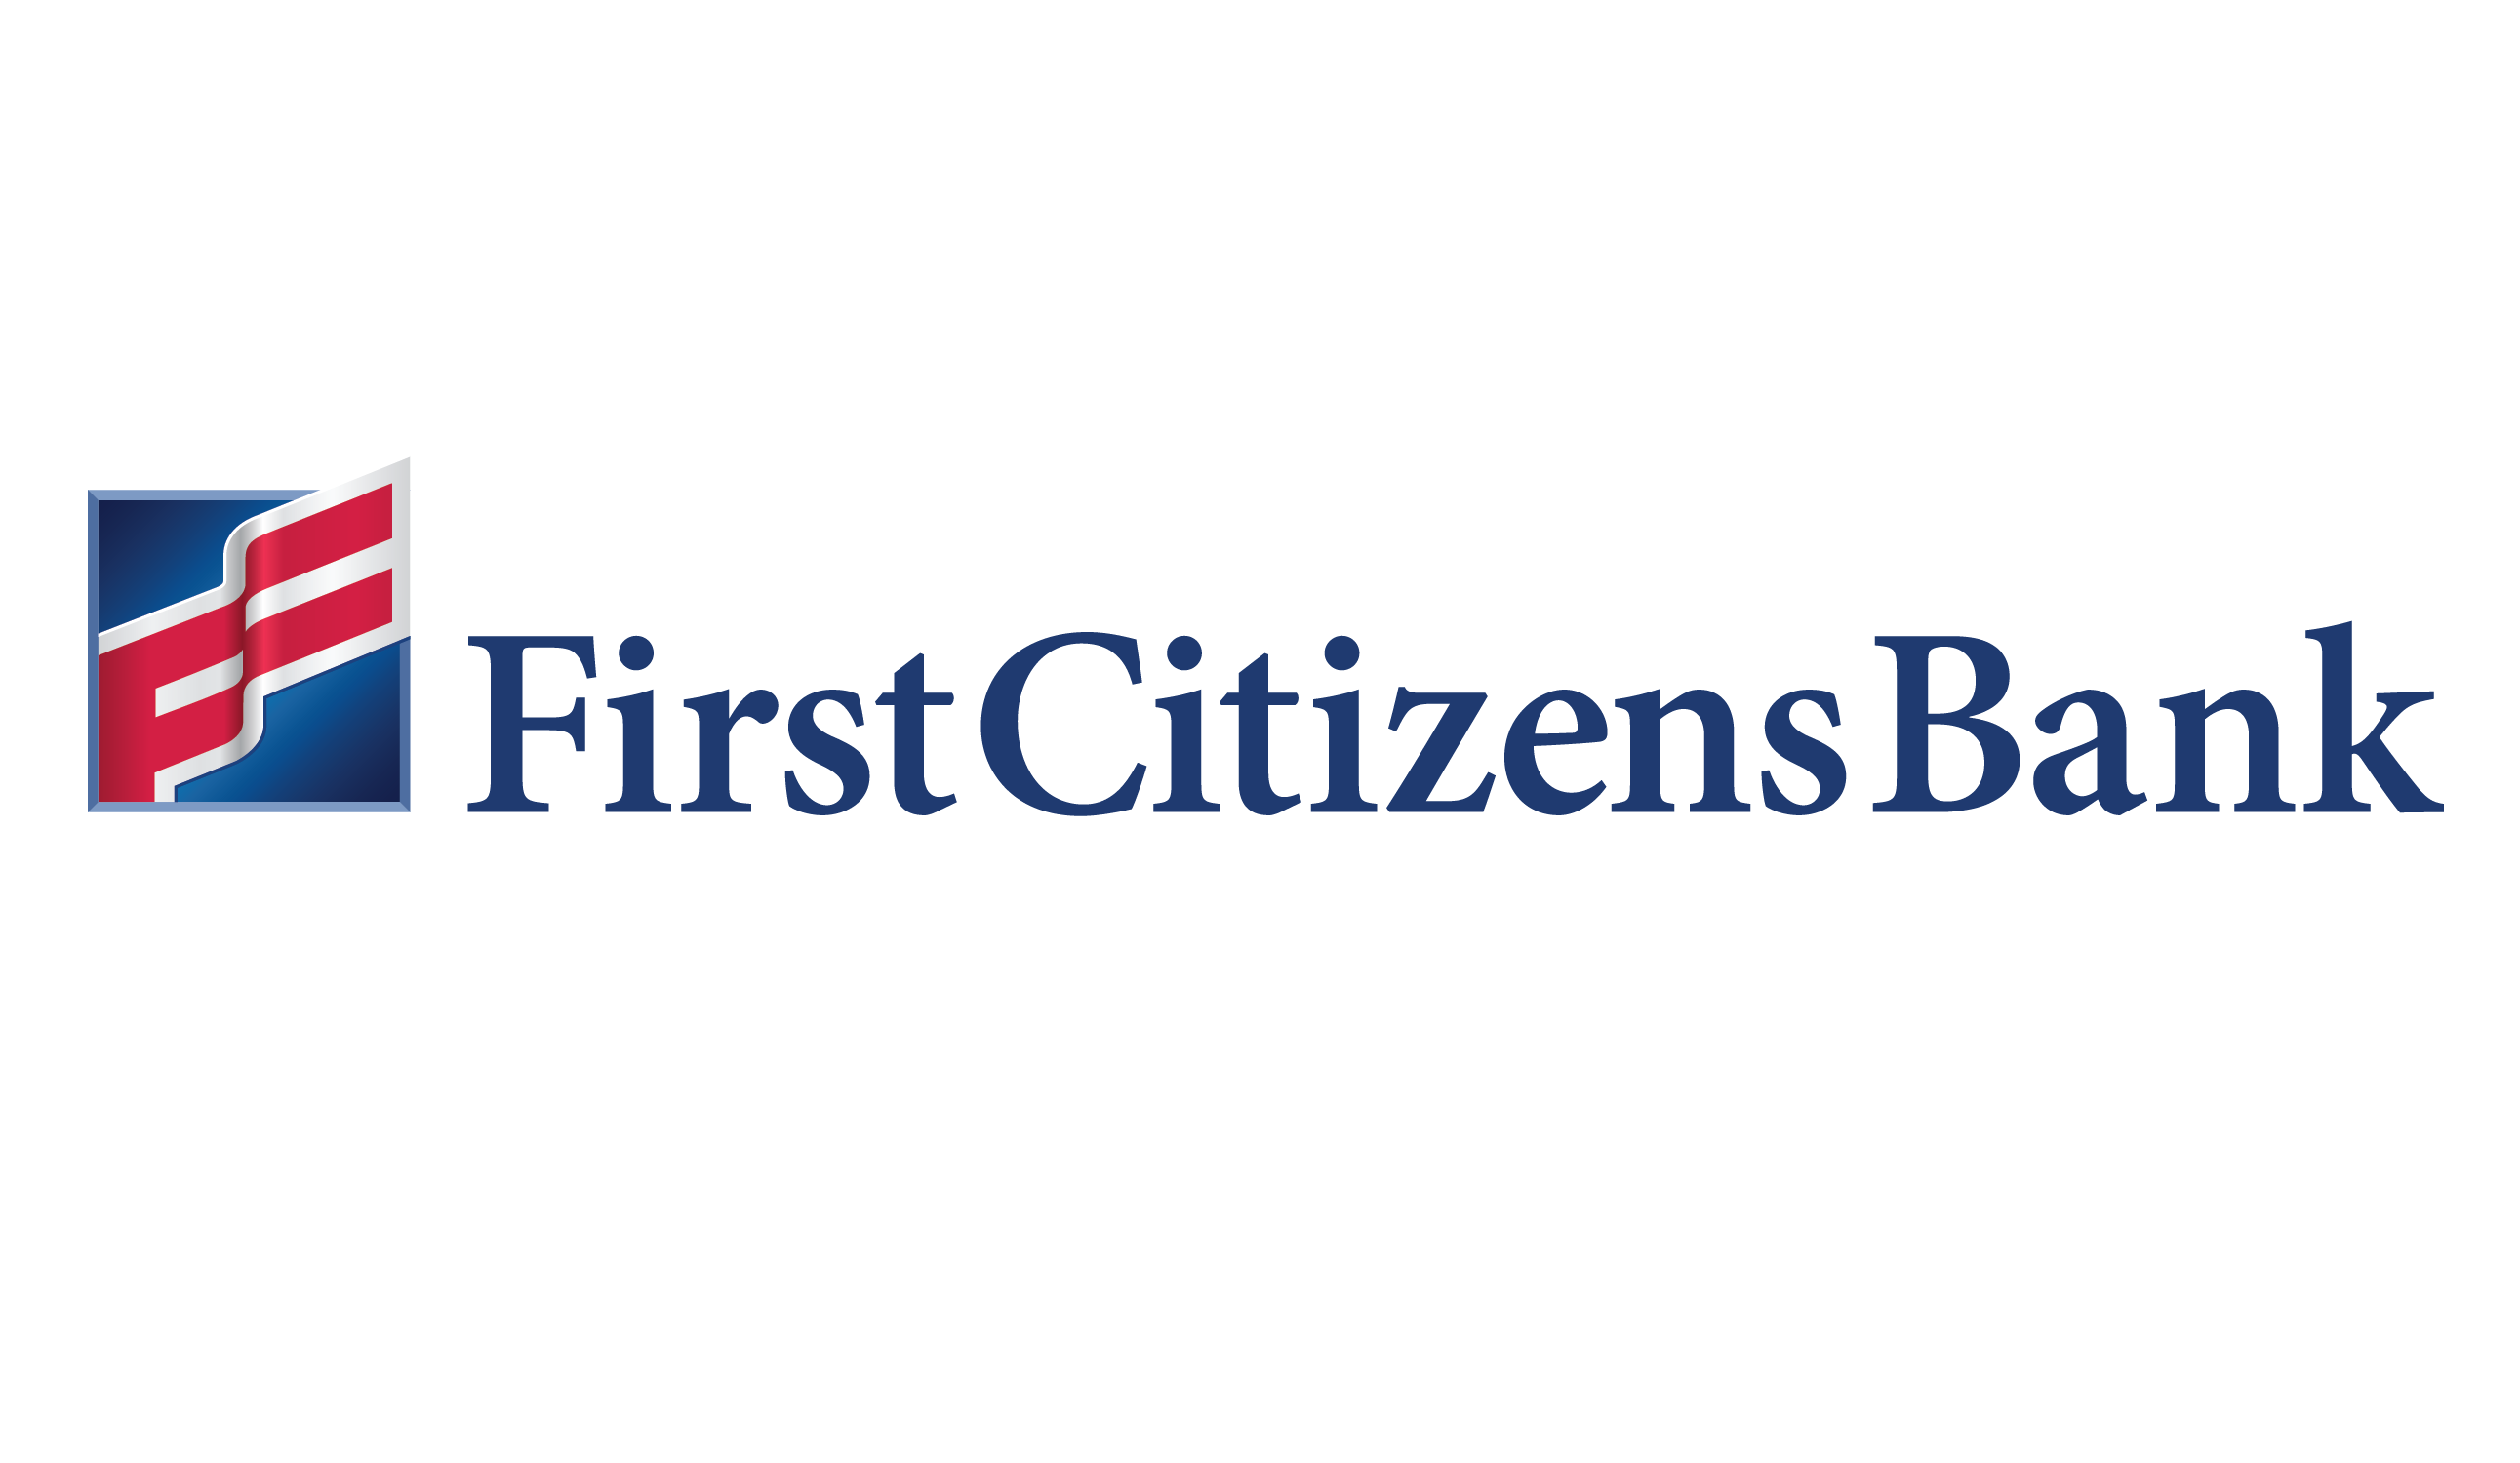 First citizens bank job reviews